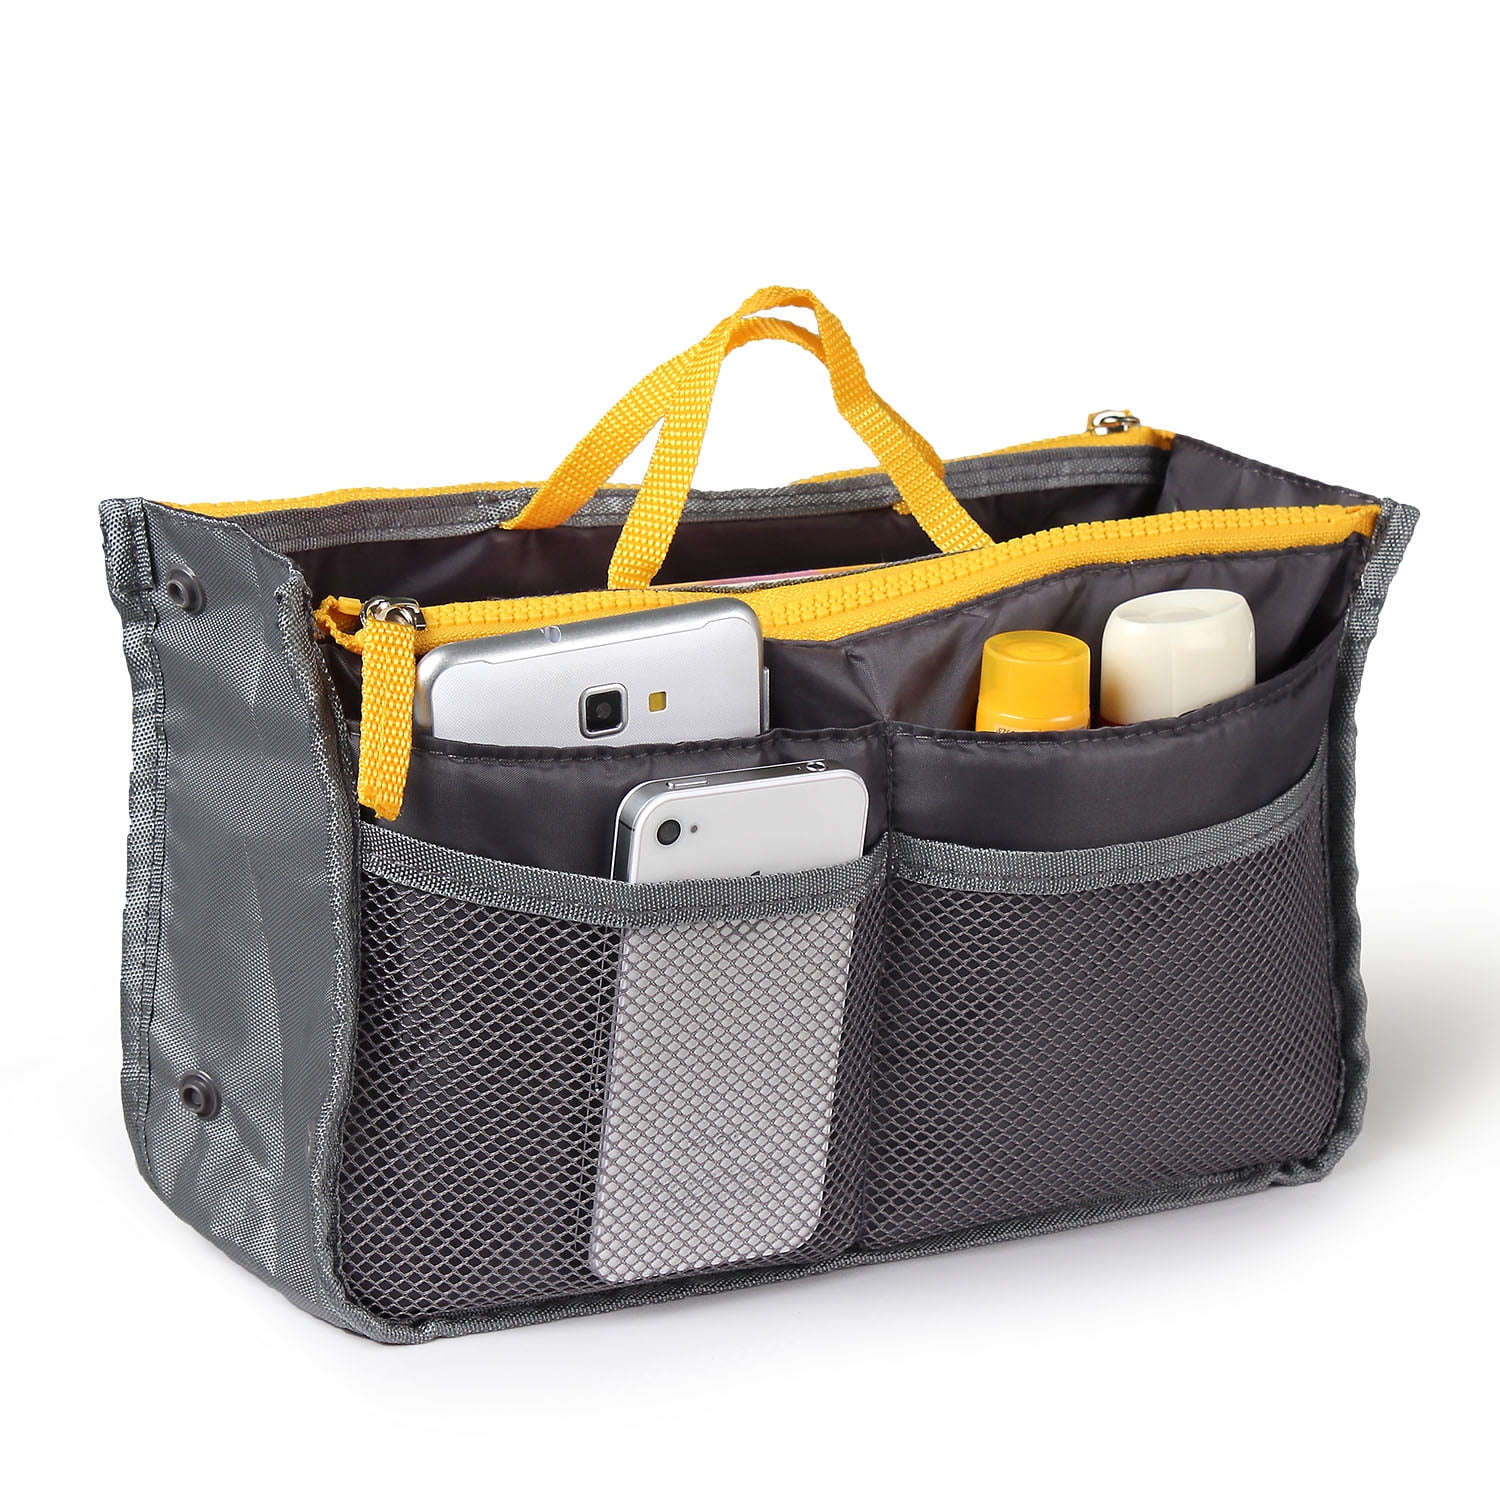 A-Premium Nylon Purse Organizer Tote Handbag Insert Organizers Bag in –  Vercord